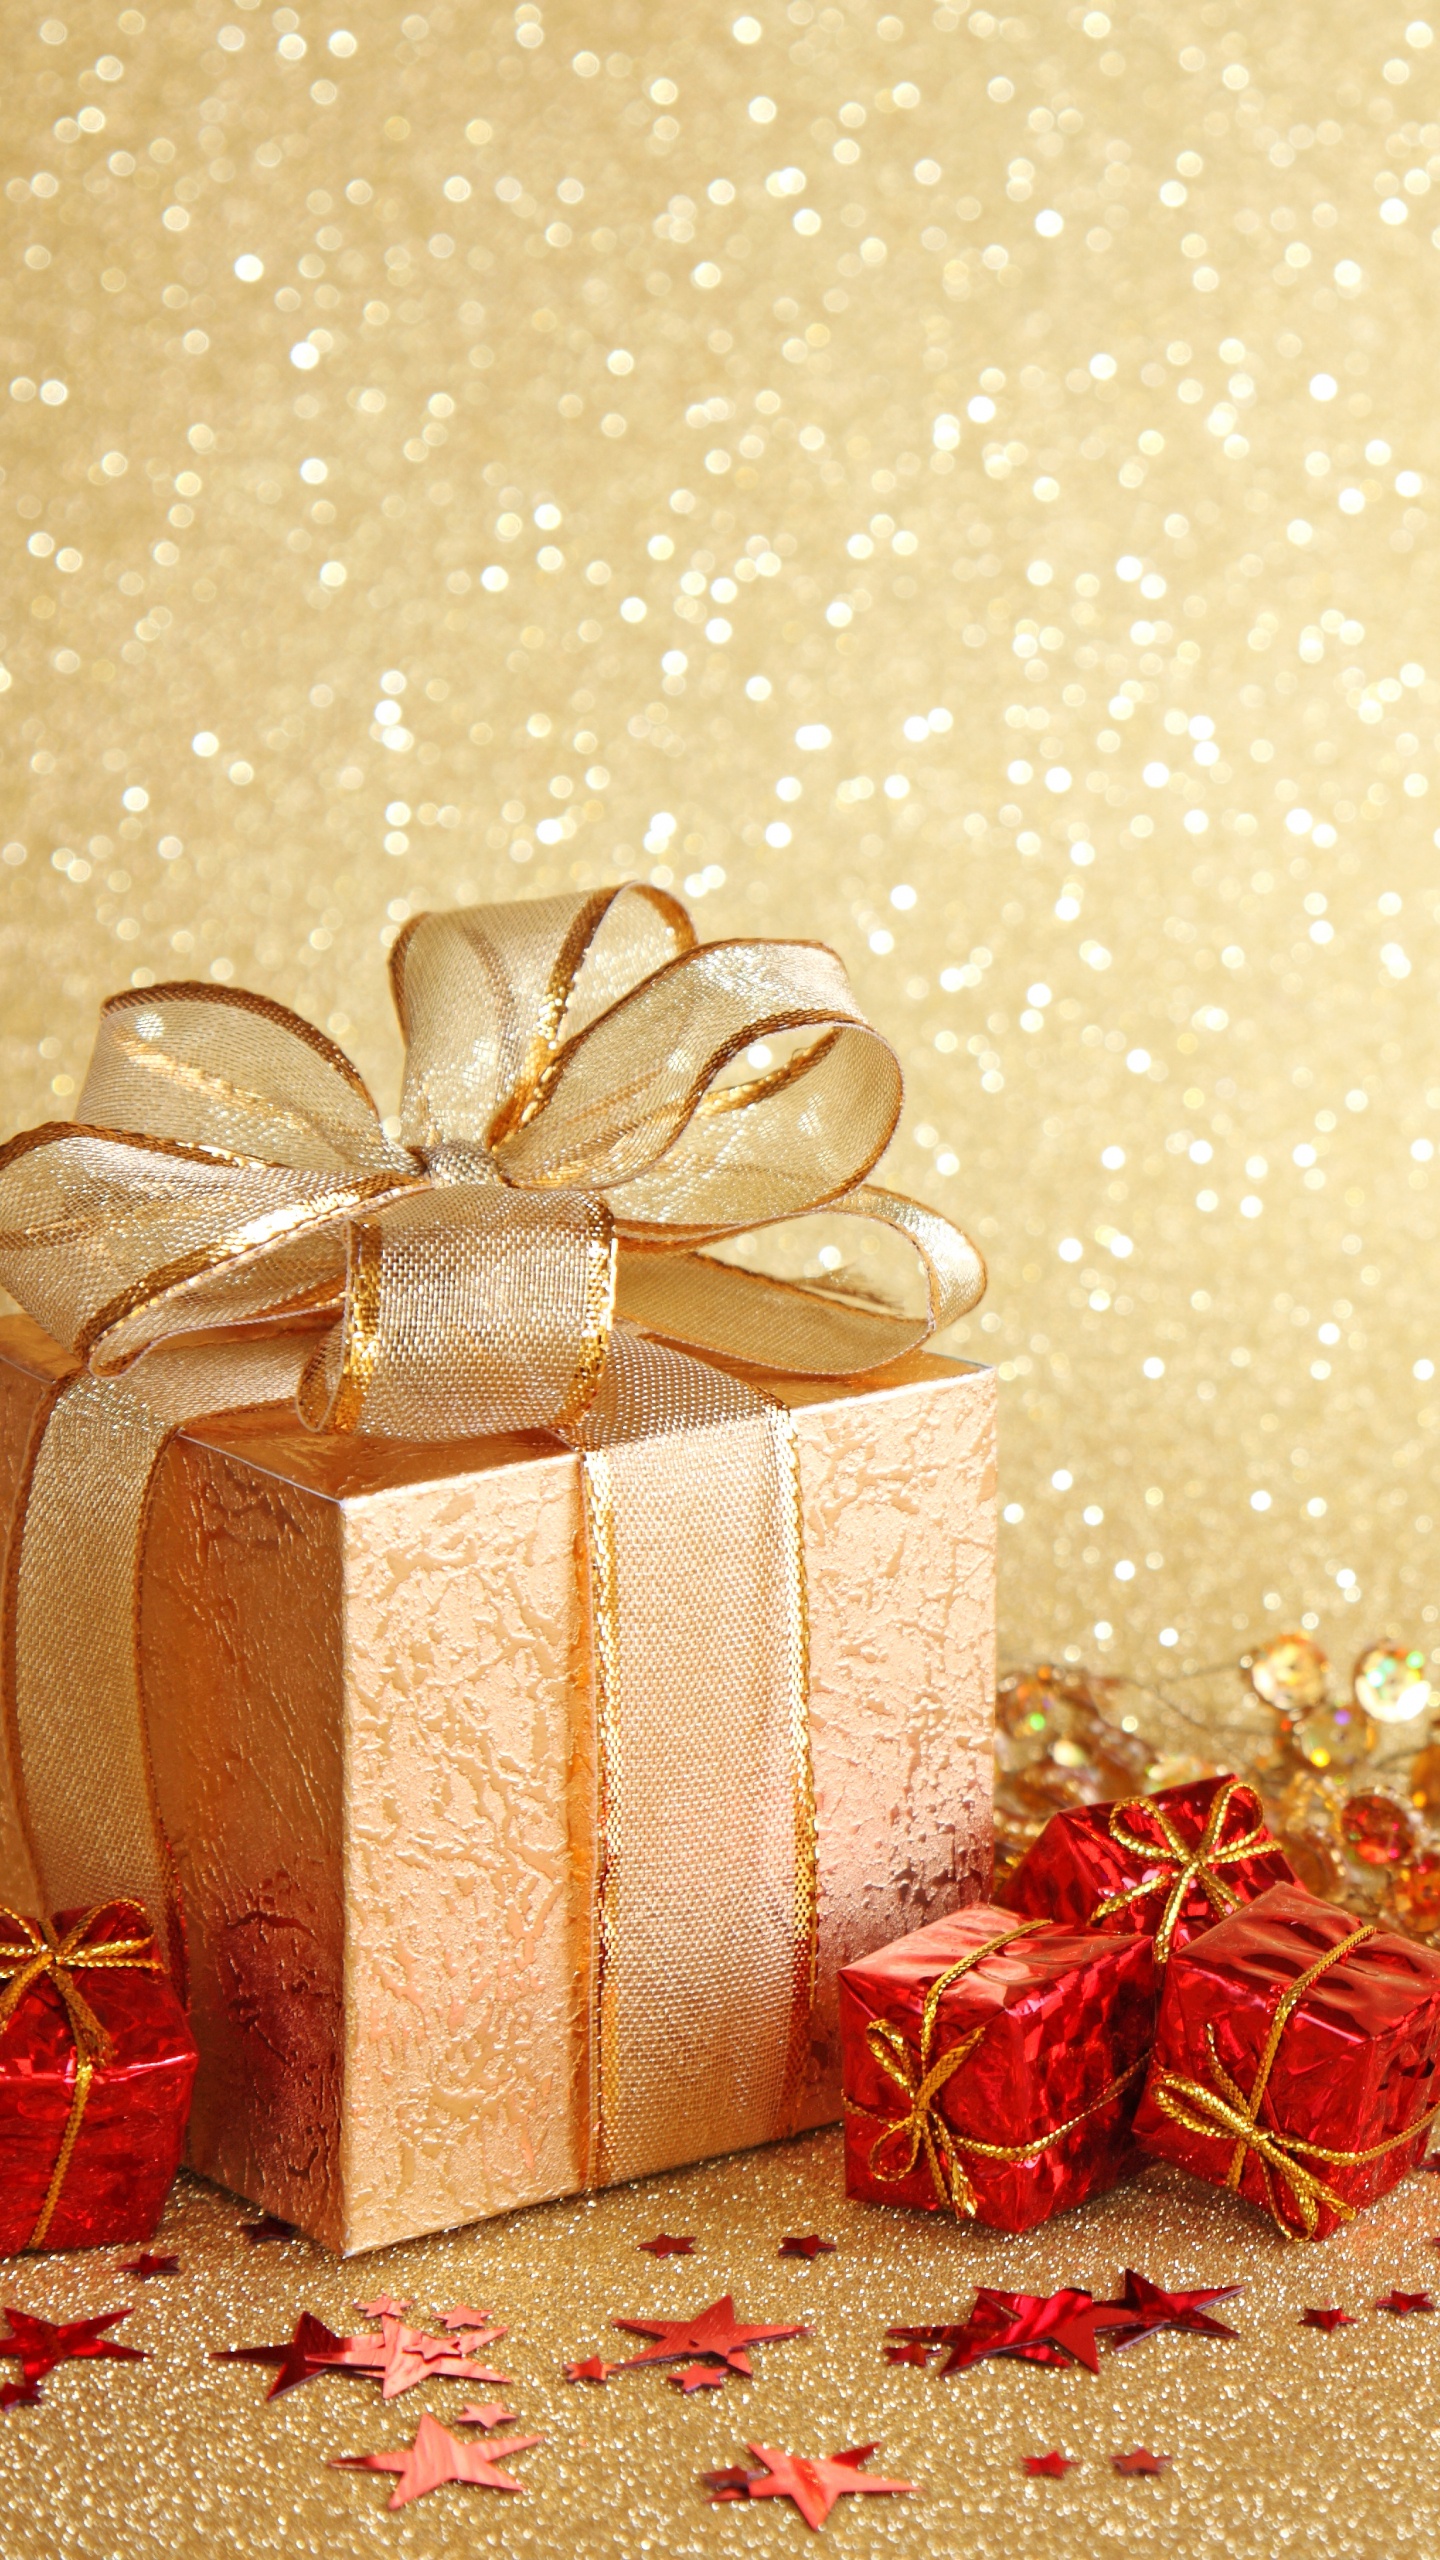 新的一年, 圣诞节那天, 礼品包装, 丝带, 圣诞装饰 壁纸 1440x2560 允许